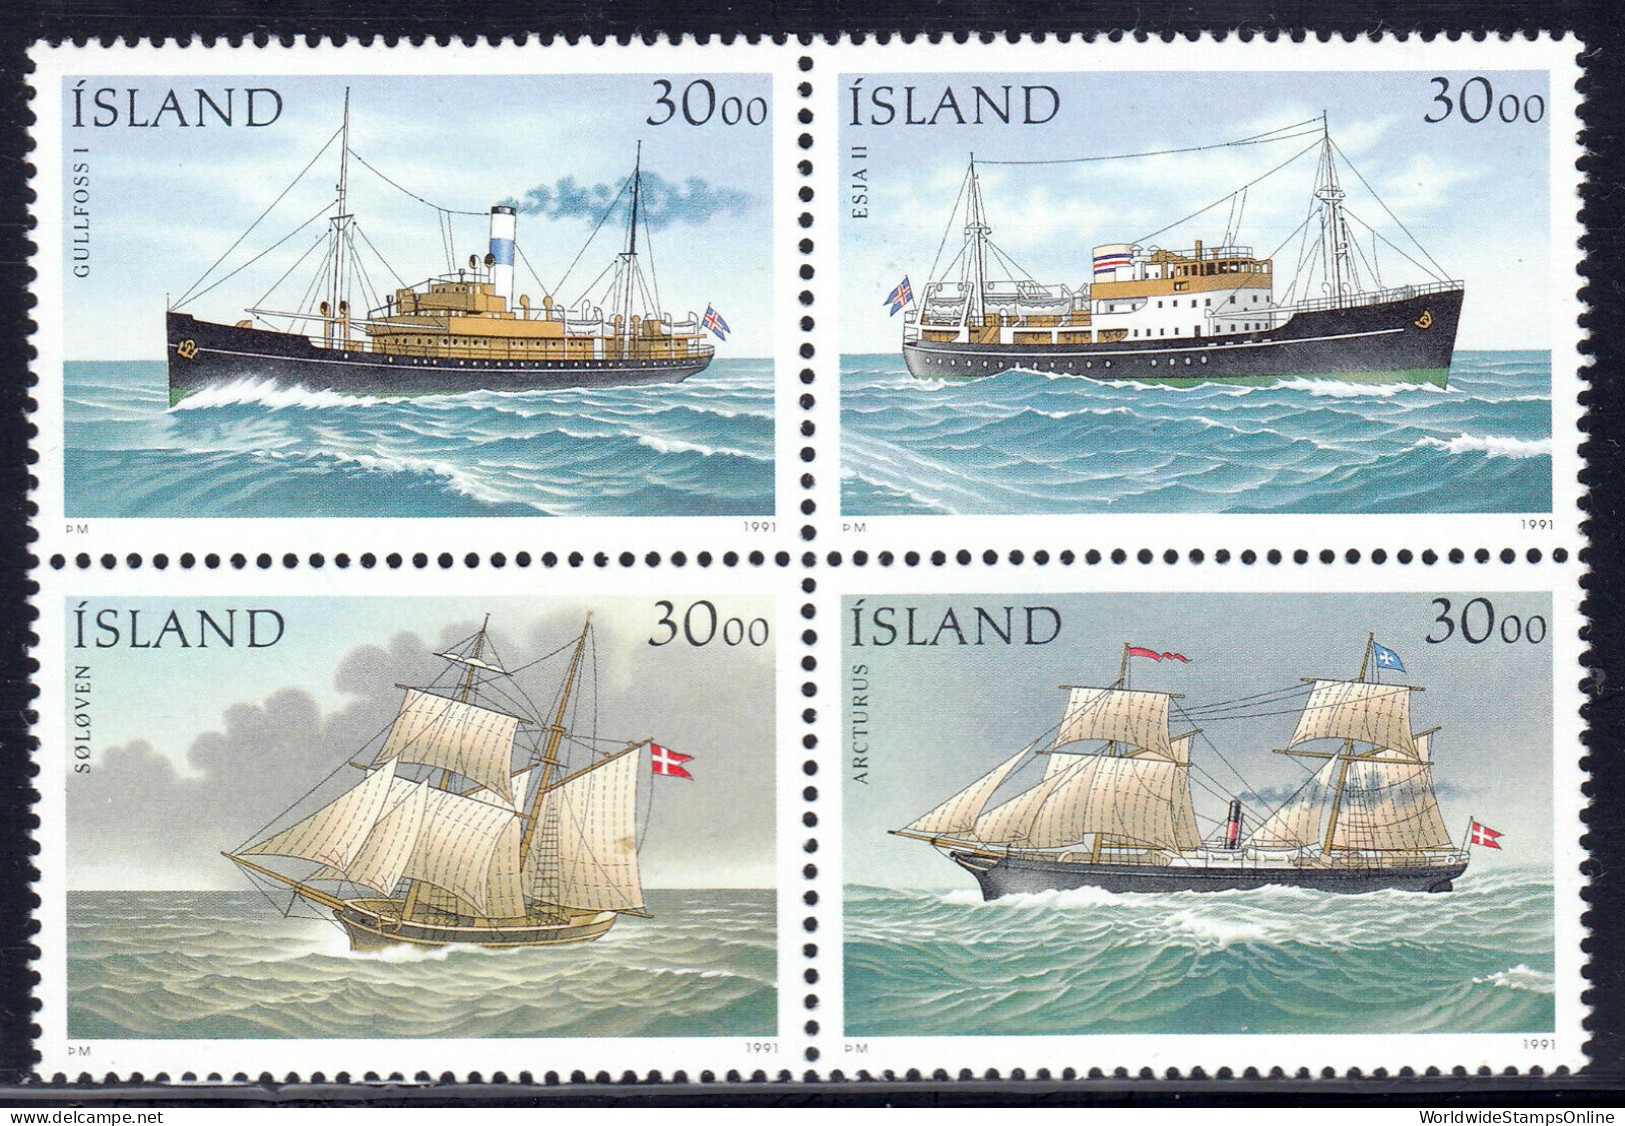 ICELAND — SCOTT 745 — 1991 SHIPS SE-TENANT SET — MNH — SCV $20 - Cartas & Documentos